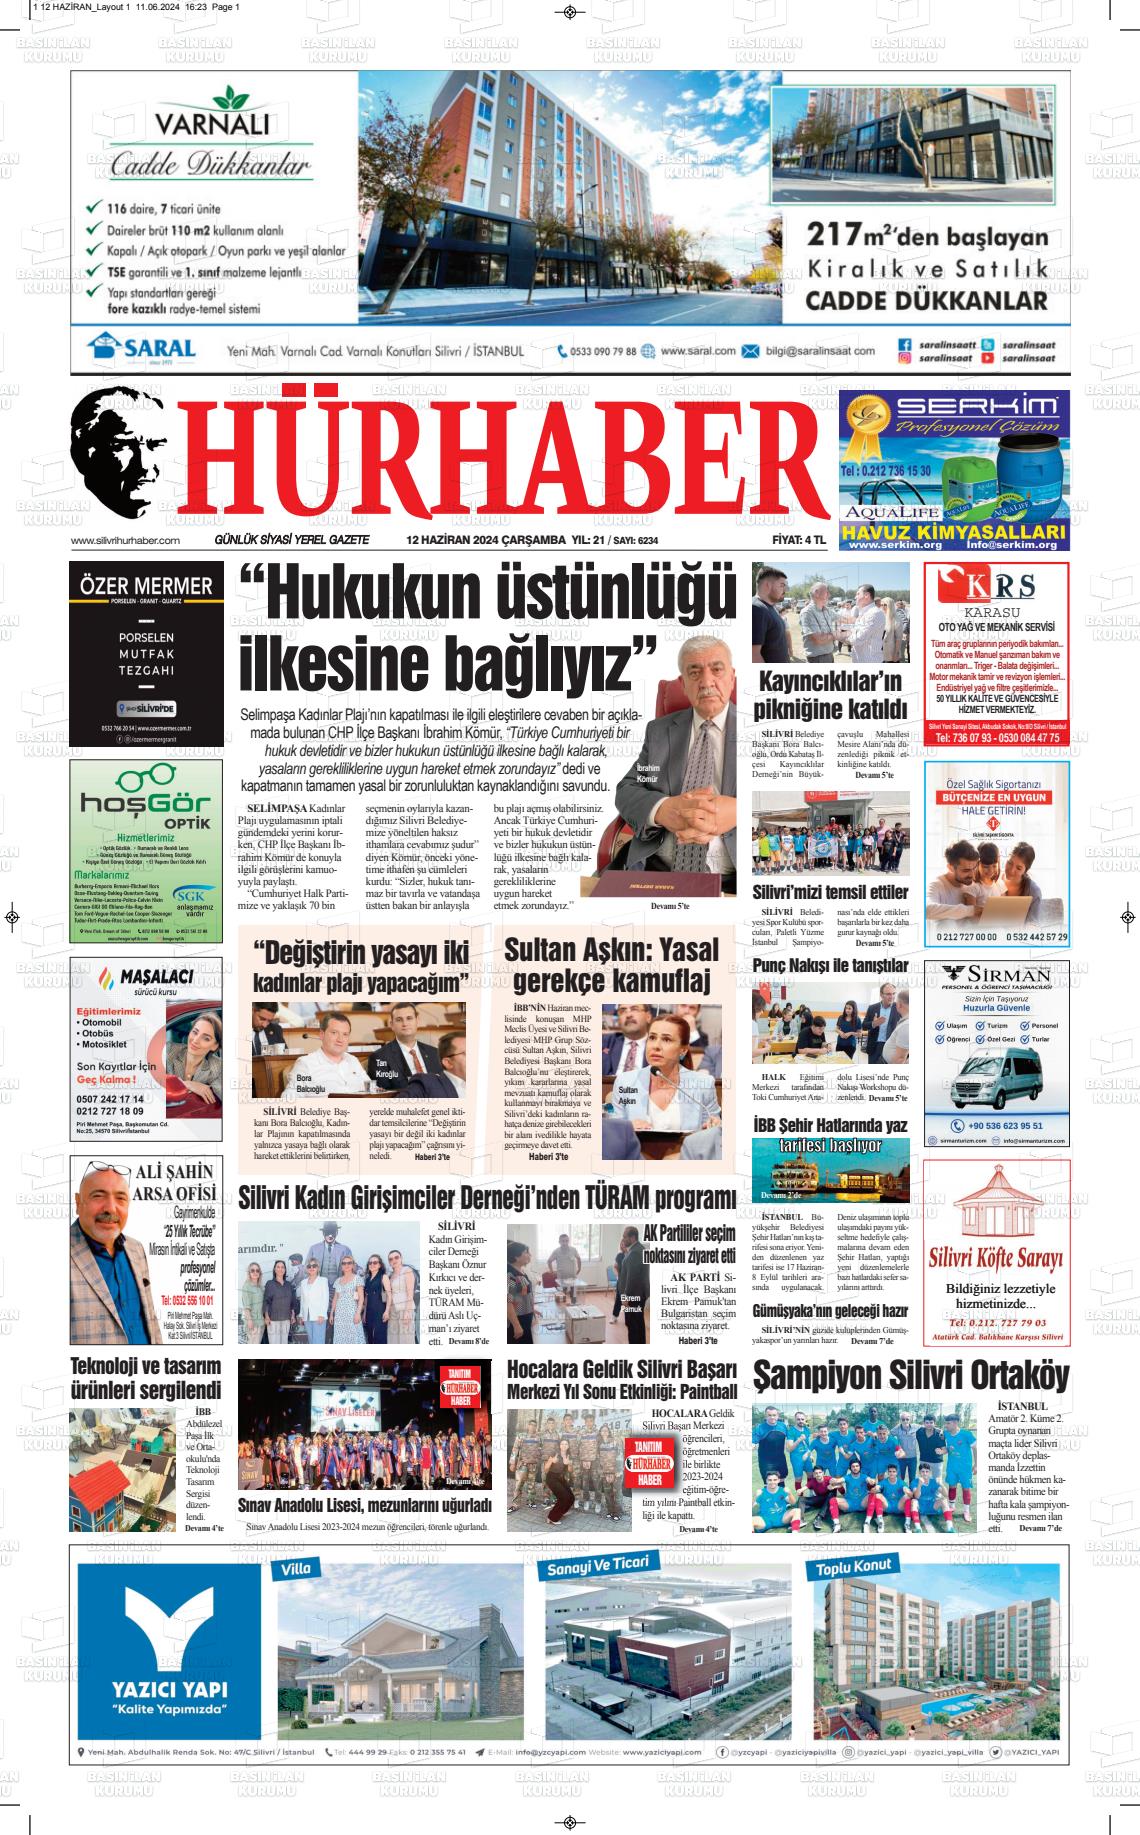 HÜRHABER Gazetesi